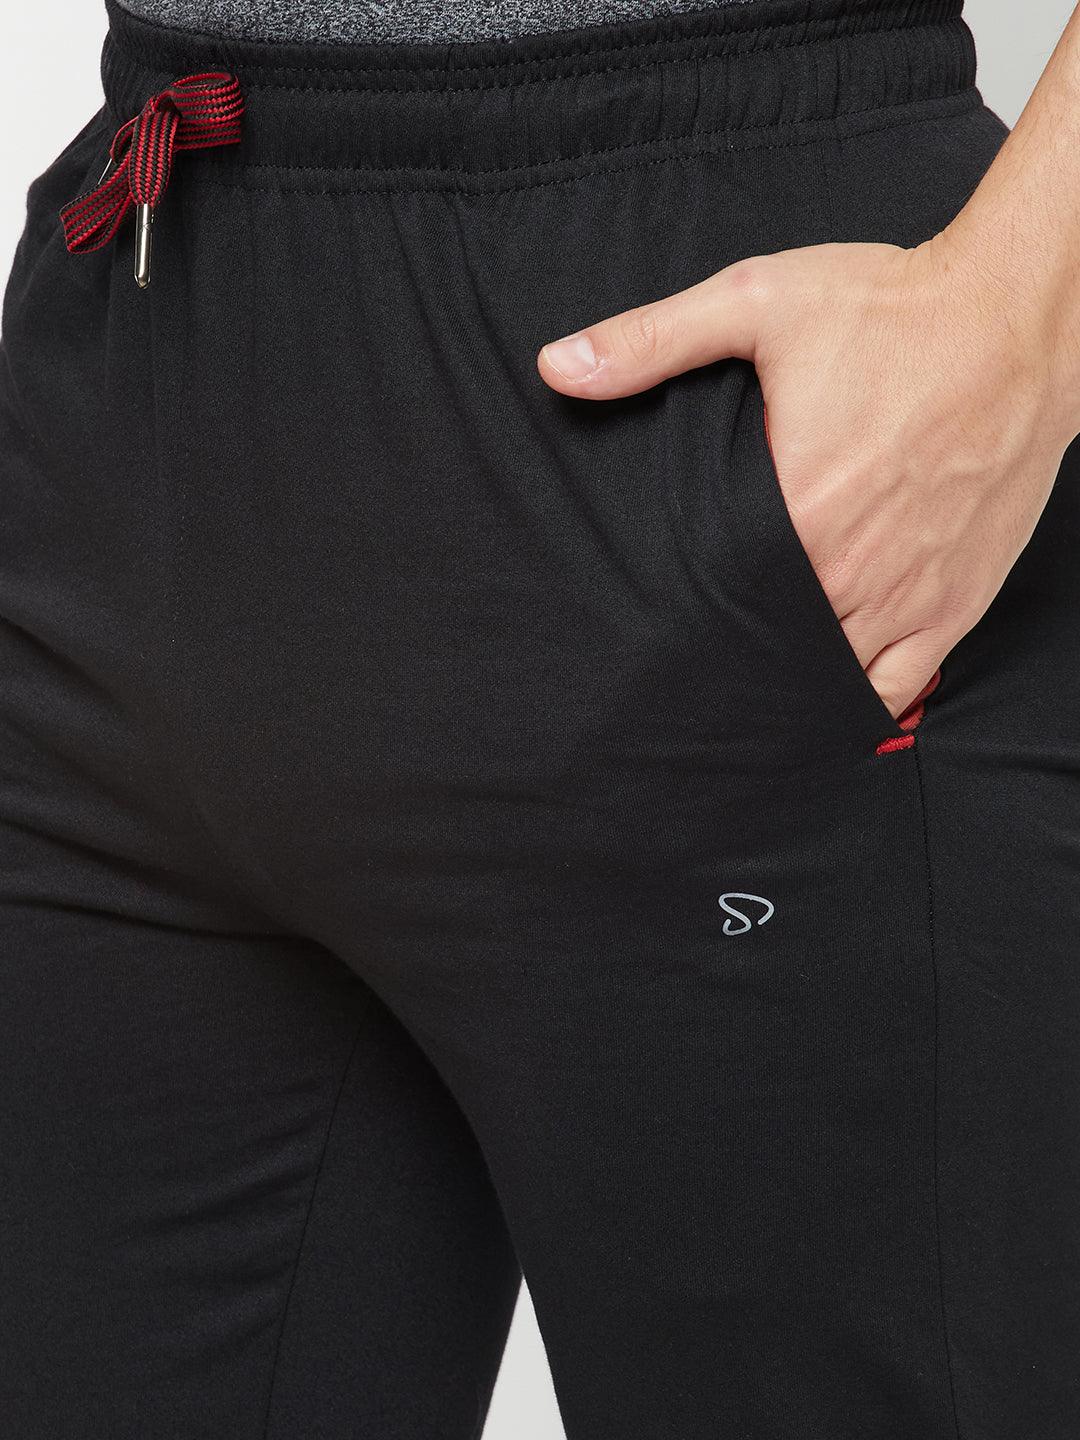 Sporto Men's Plaited Jersey Knit Black Track pants